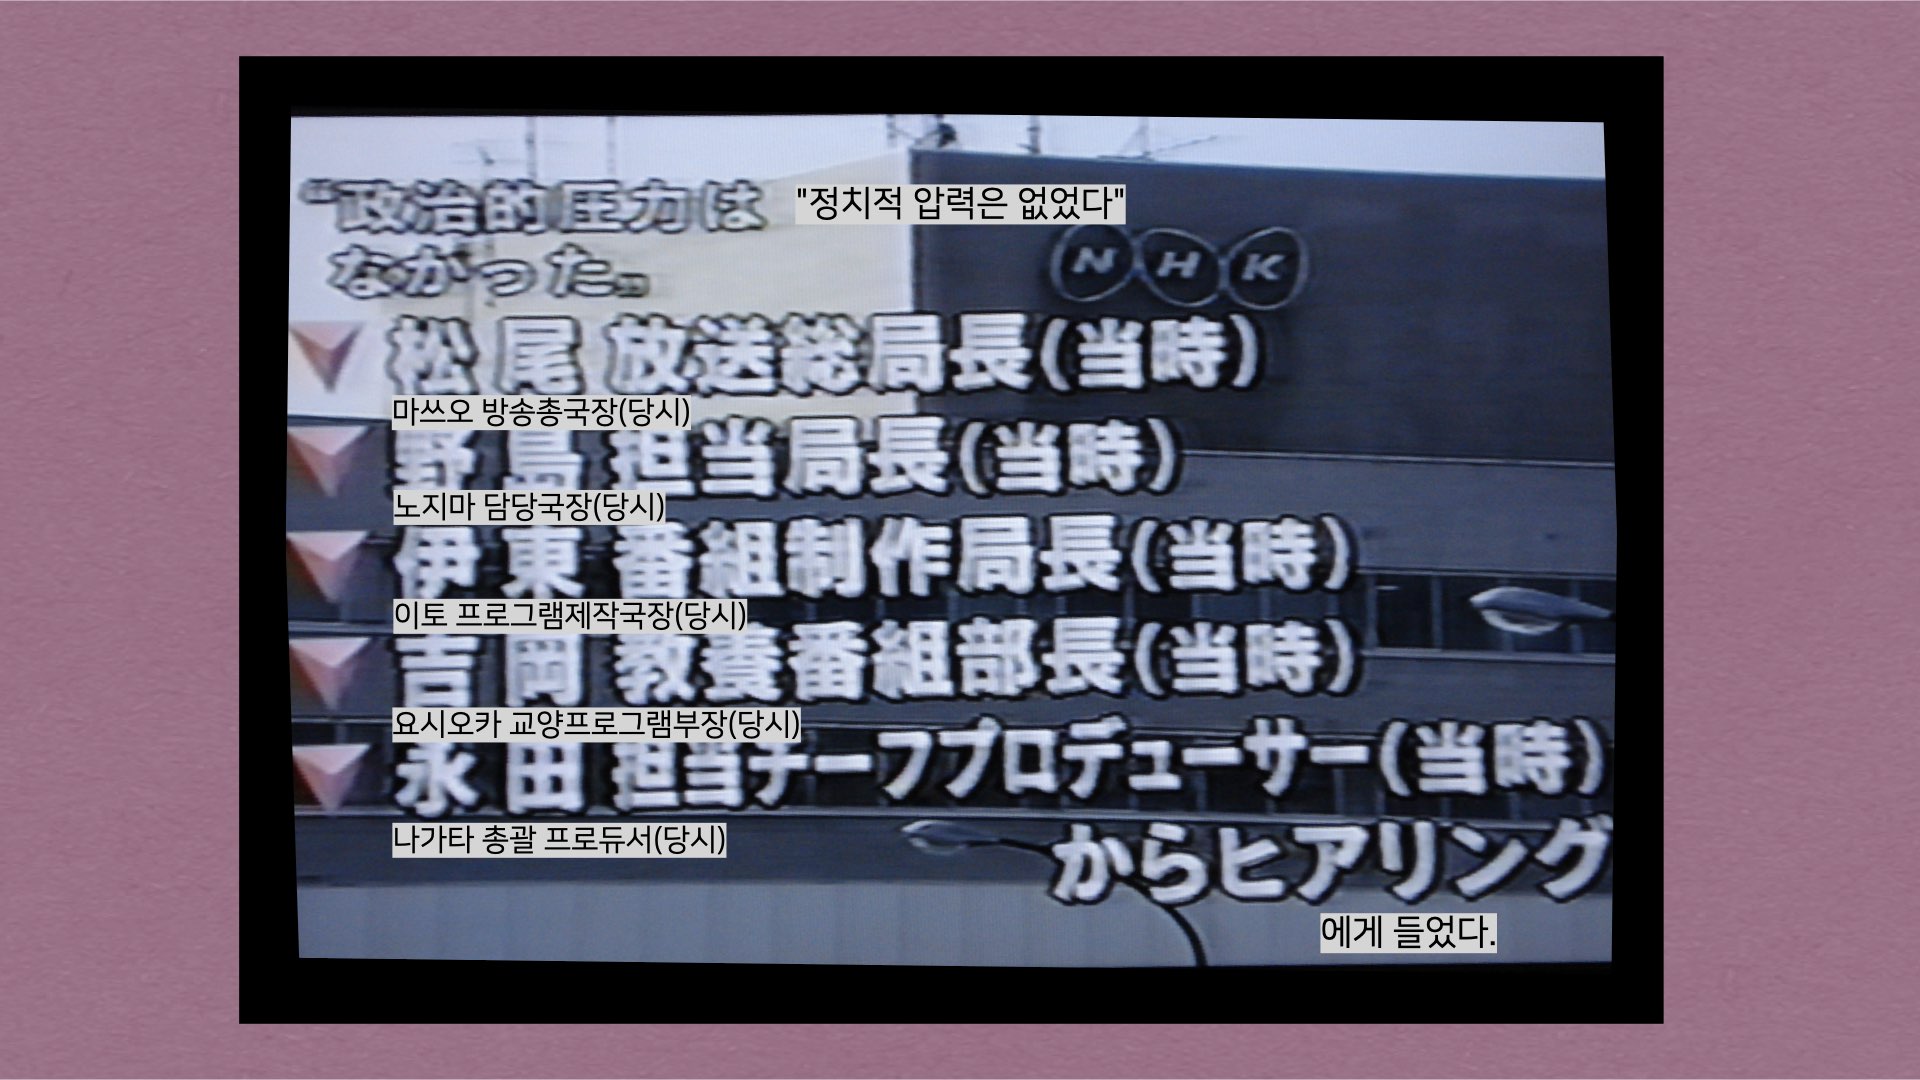 2001년 1월 19일 NHK 저녁 뉴스 (1)